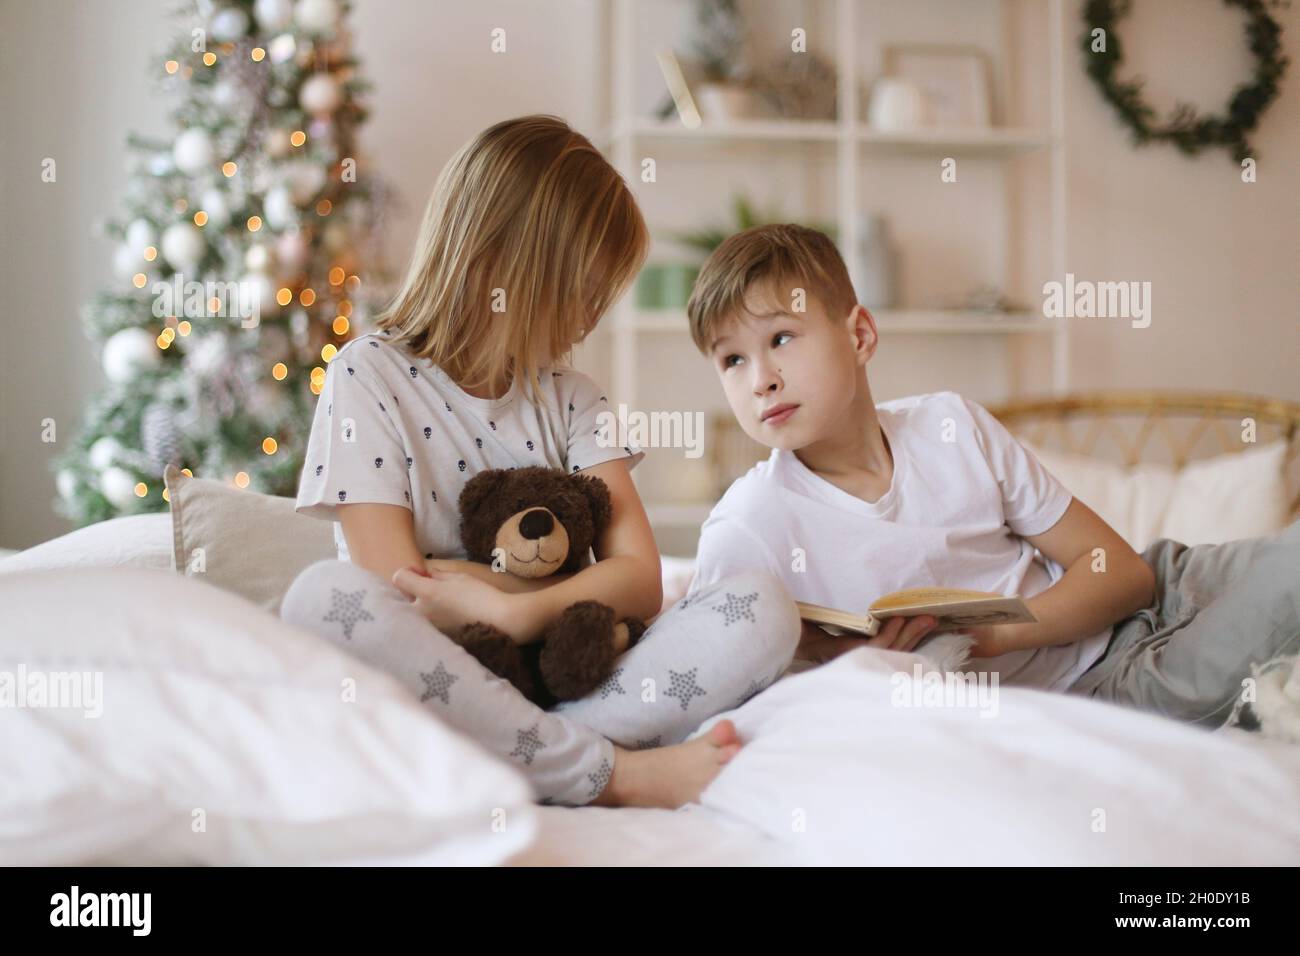 Fratello sta leggendo un libro alla sorella, seduta sul letto. Foto Stock